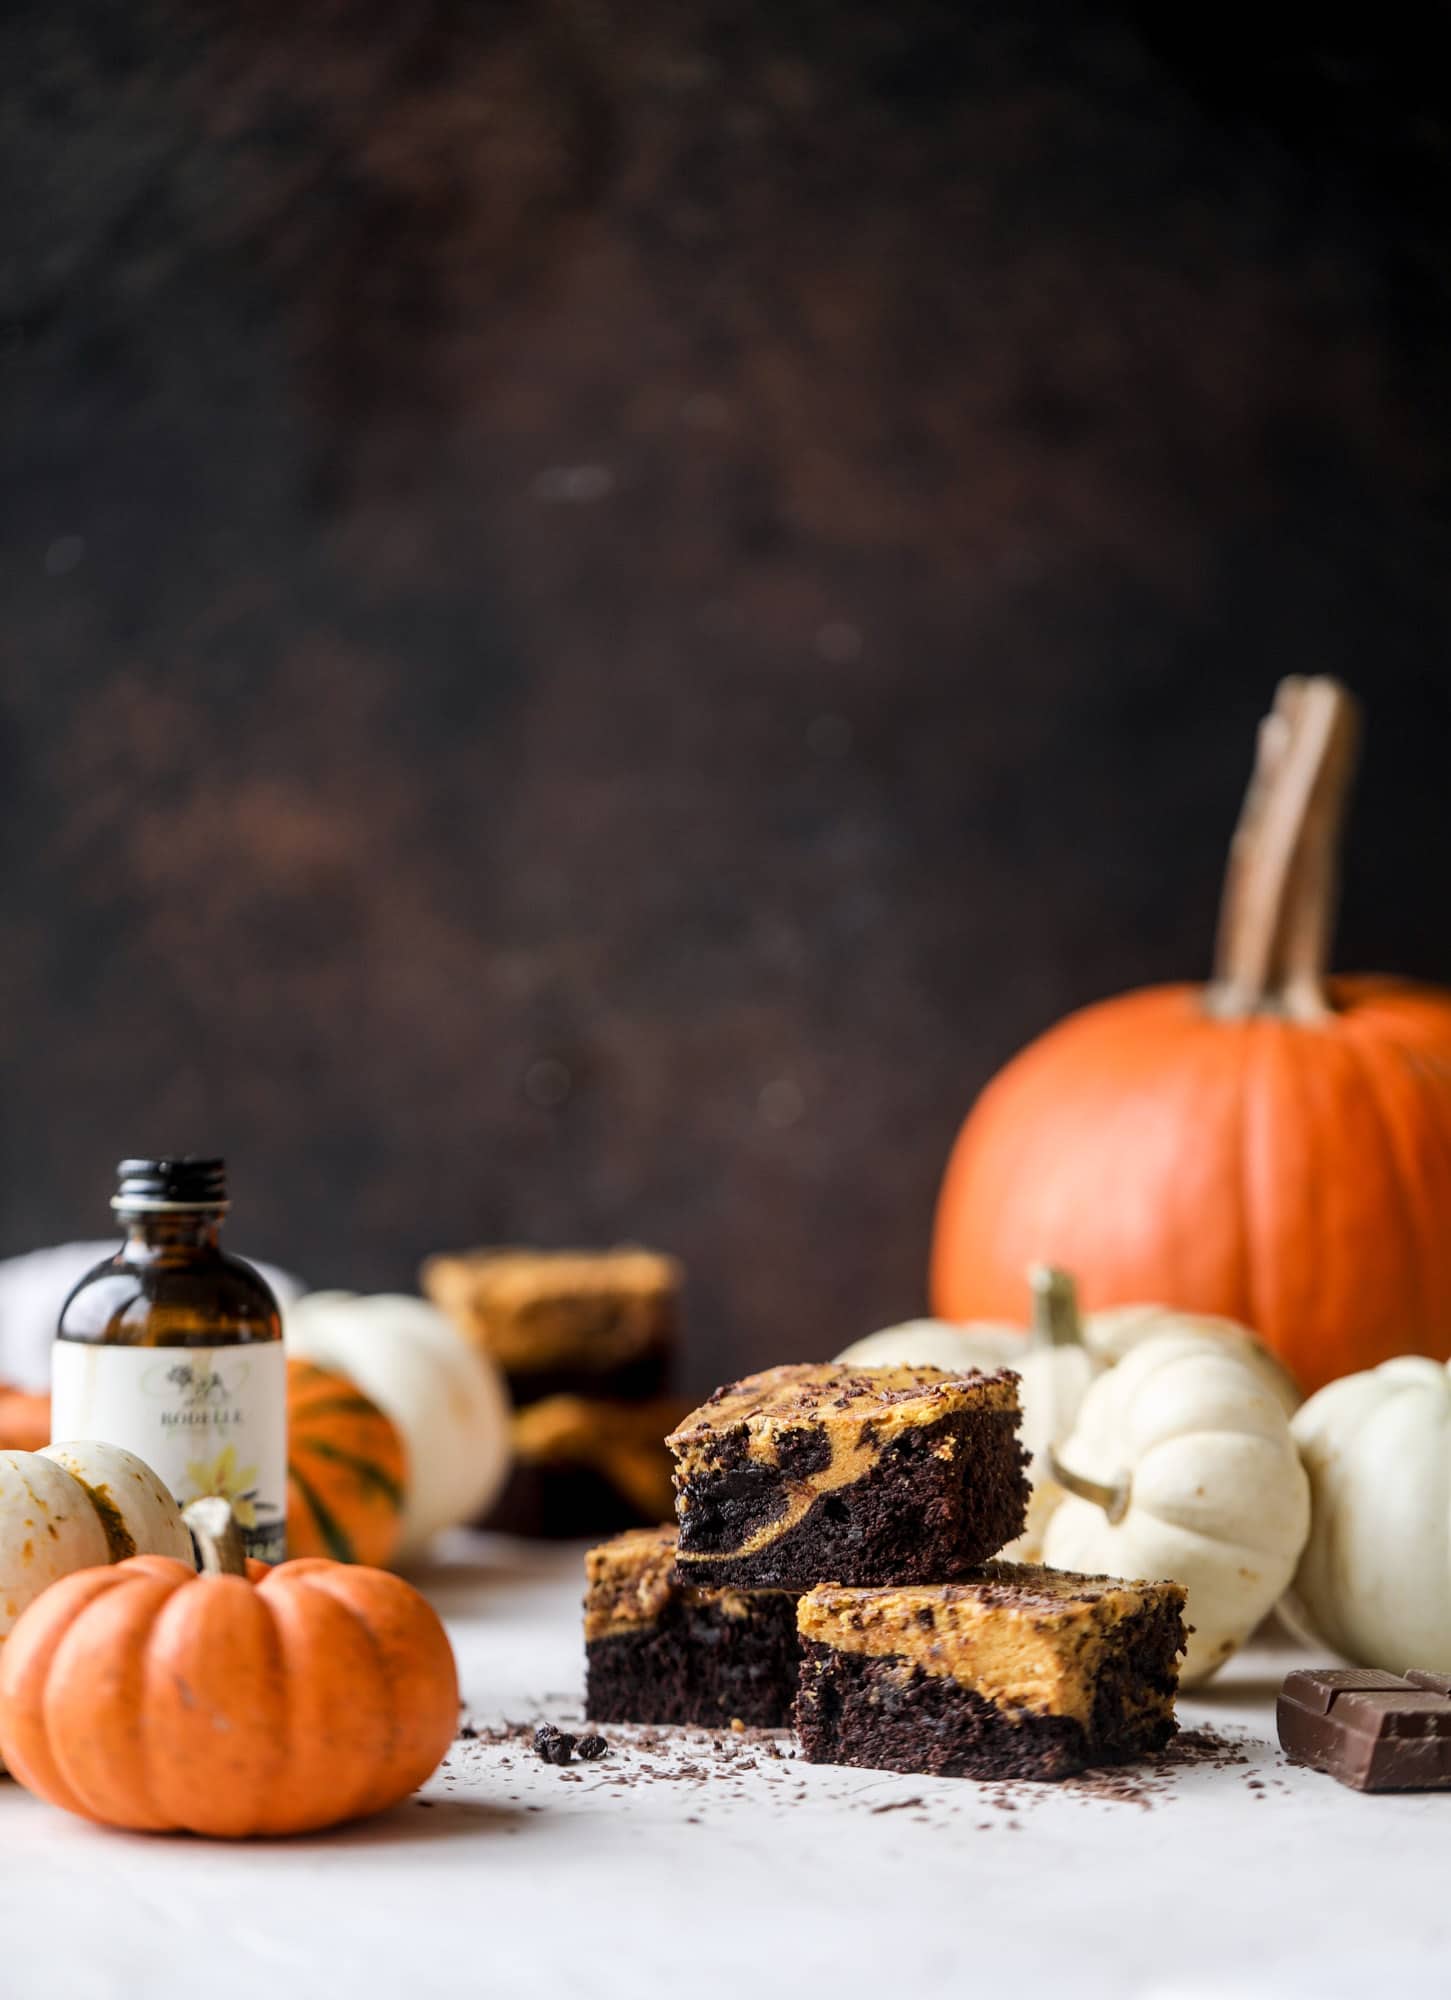 这些南瓜布朗尼底部有一层松软的巧克力，上面有一层丝滑的南瓜!它们是如此美味，丰富和完美的秋天。南瓜布朗尼很容易一起来，也可以提前做好!我嚎用作嚎叫#pumpkin #brownies